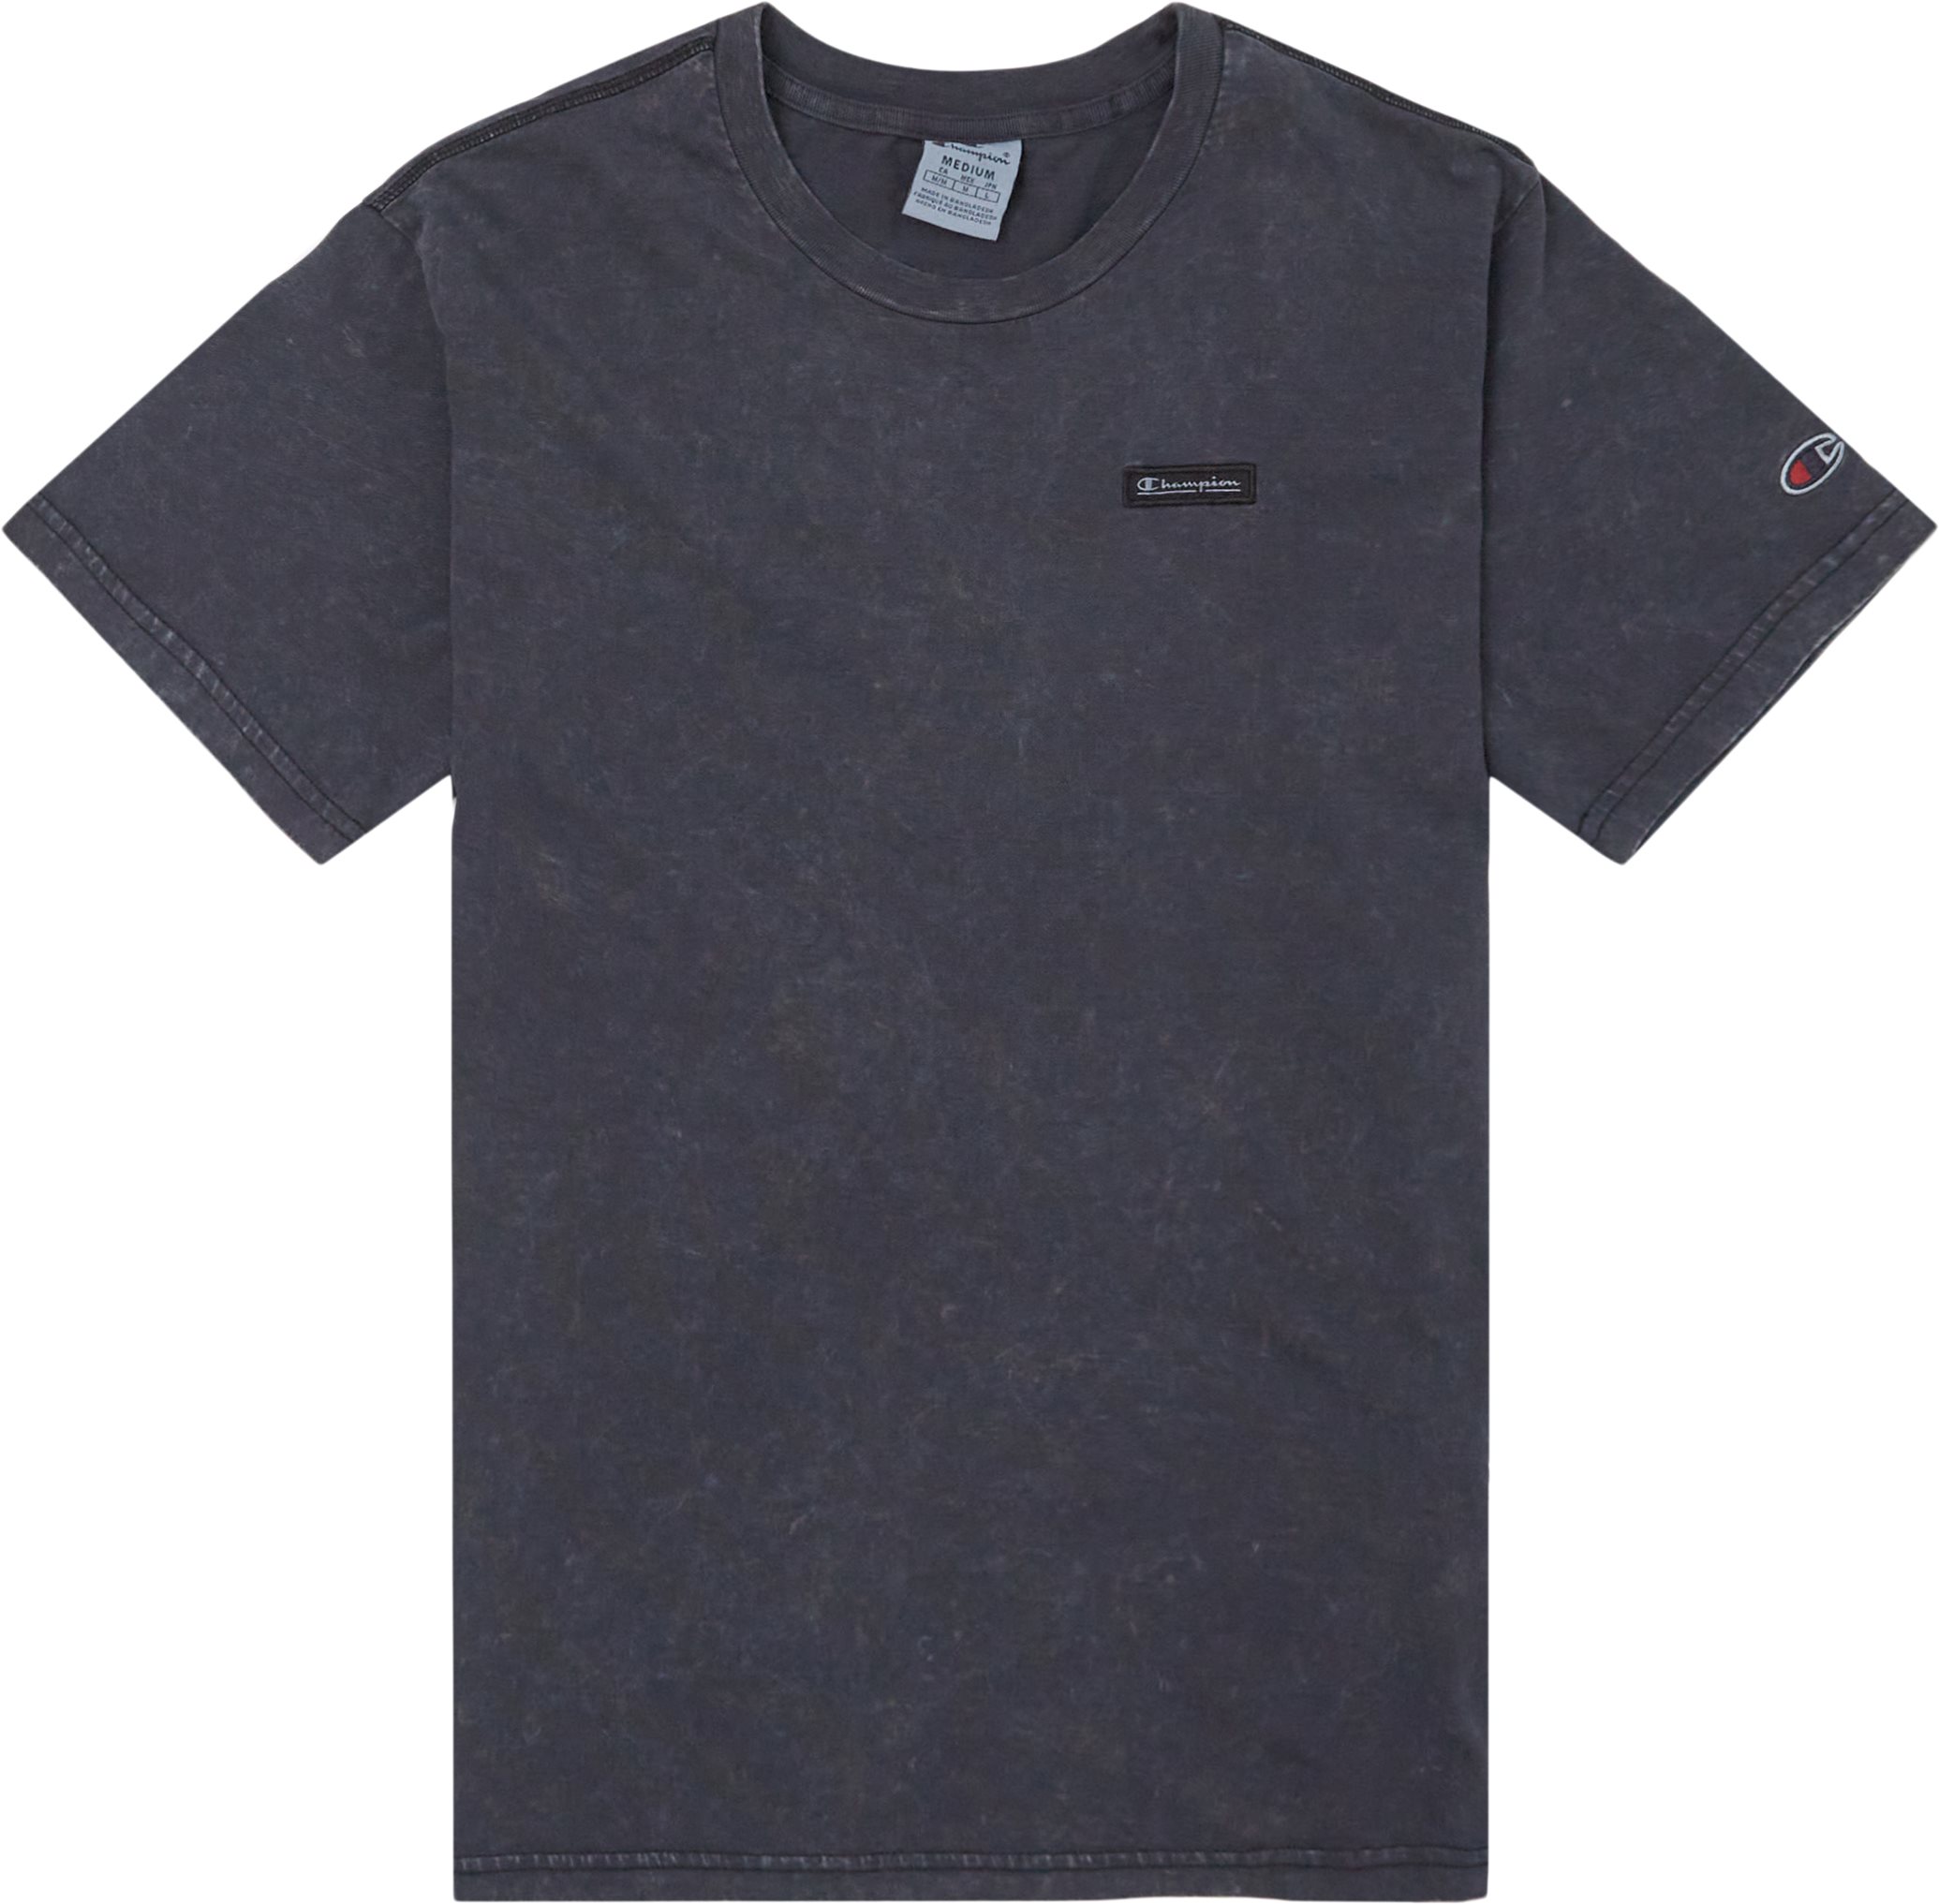 Crewneck Tee - T-shirts - Regular fit - Svart